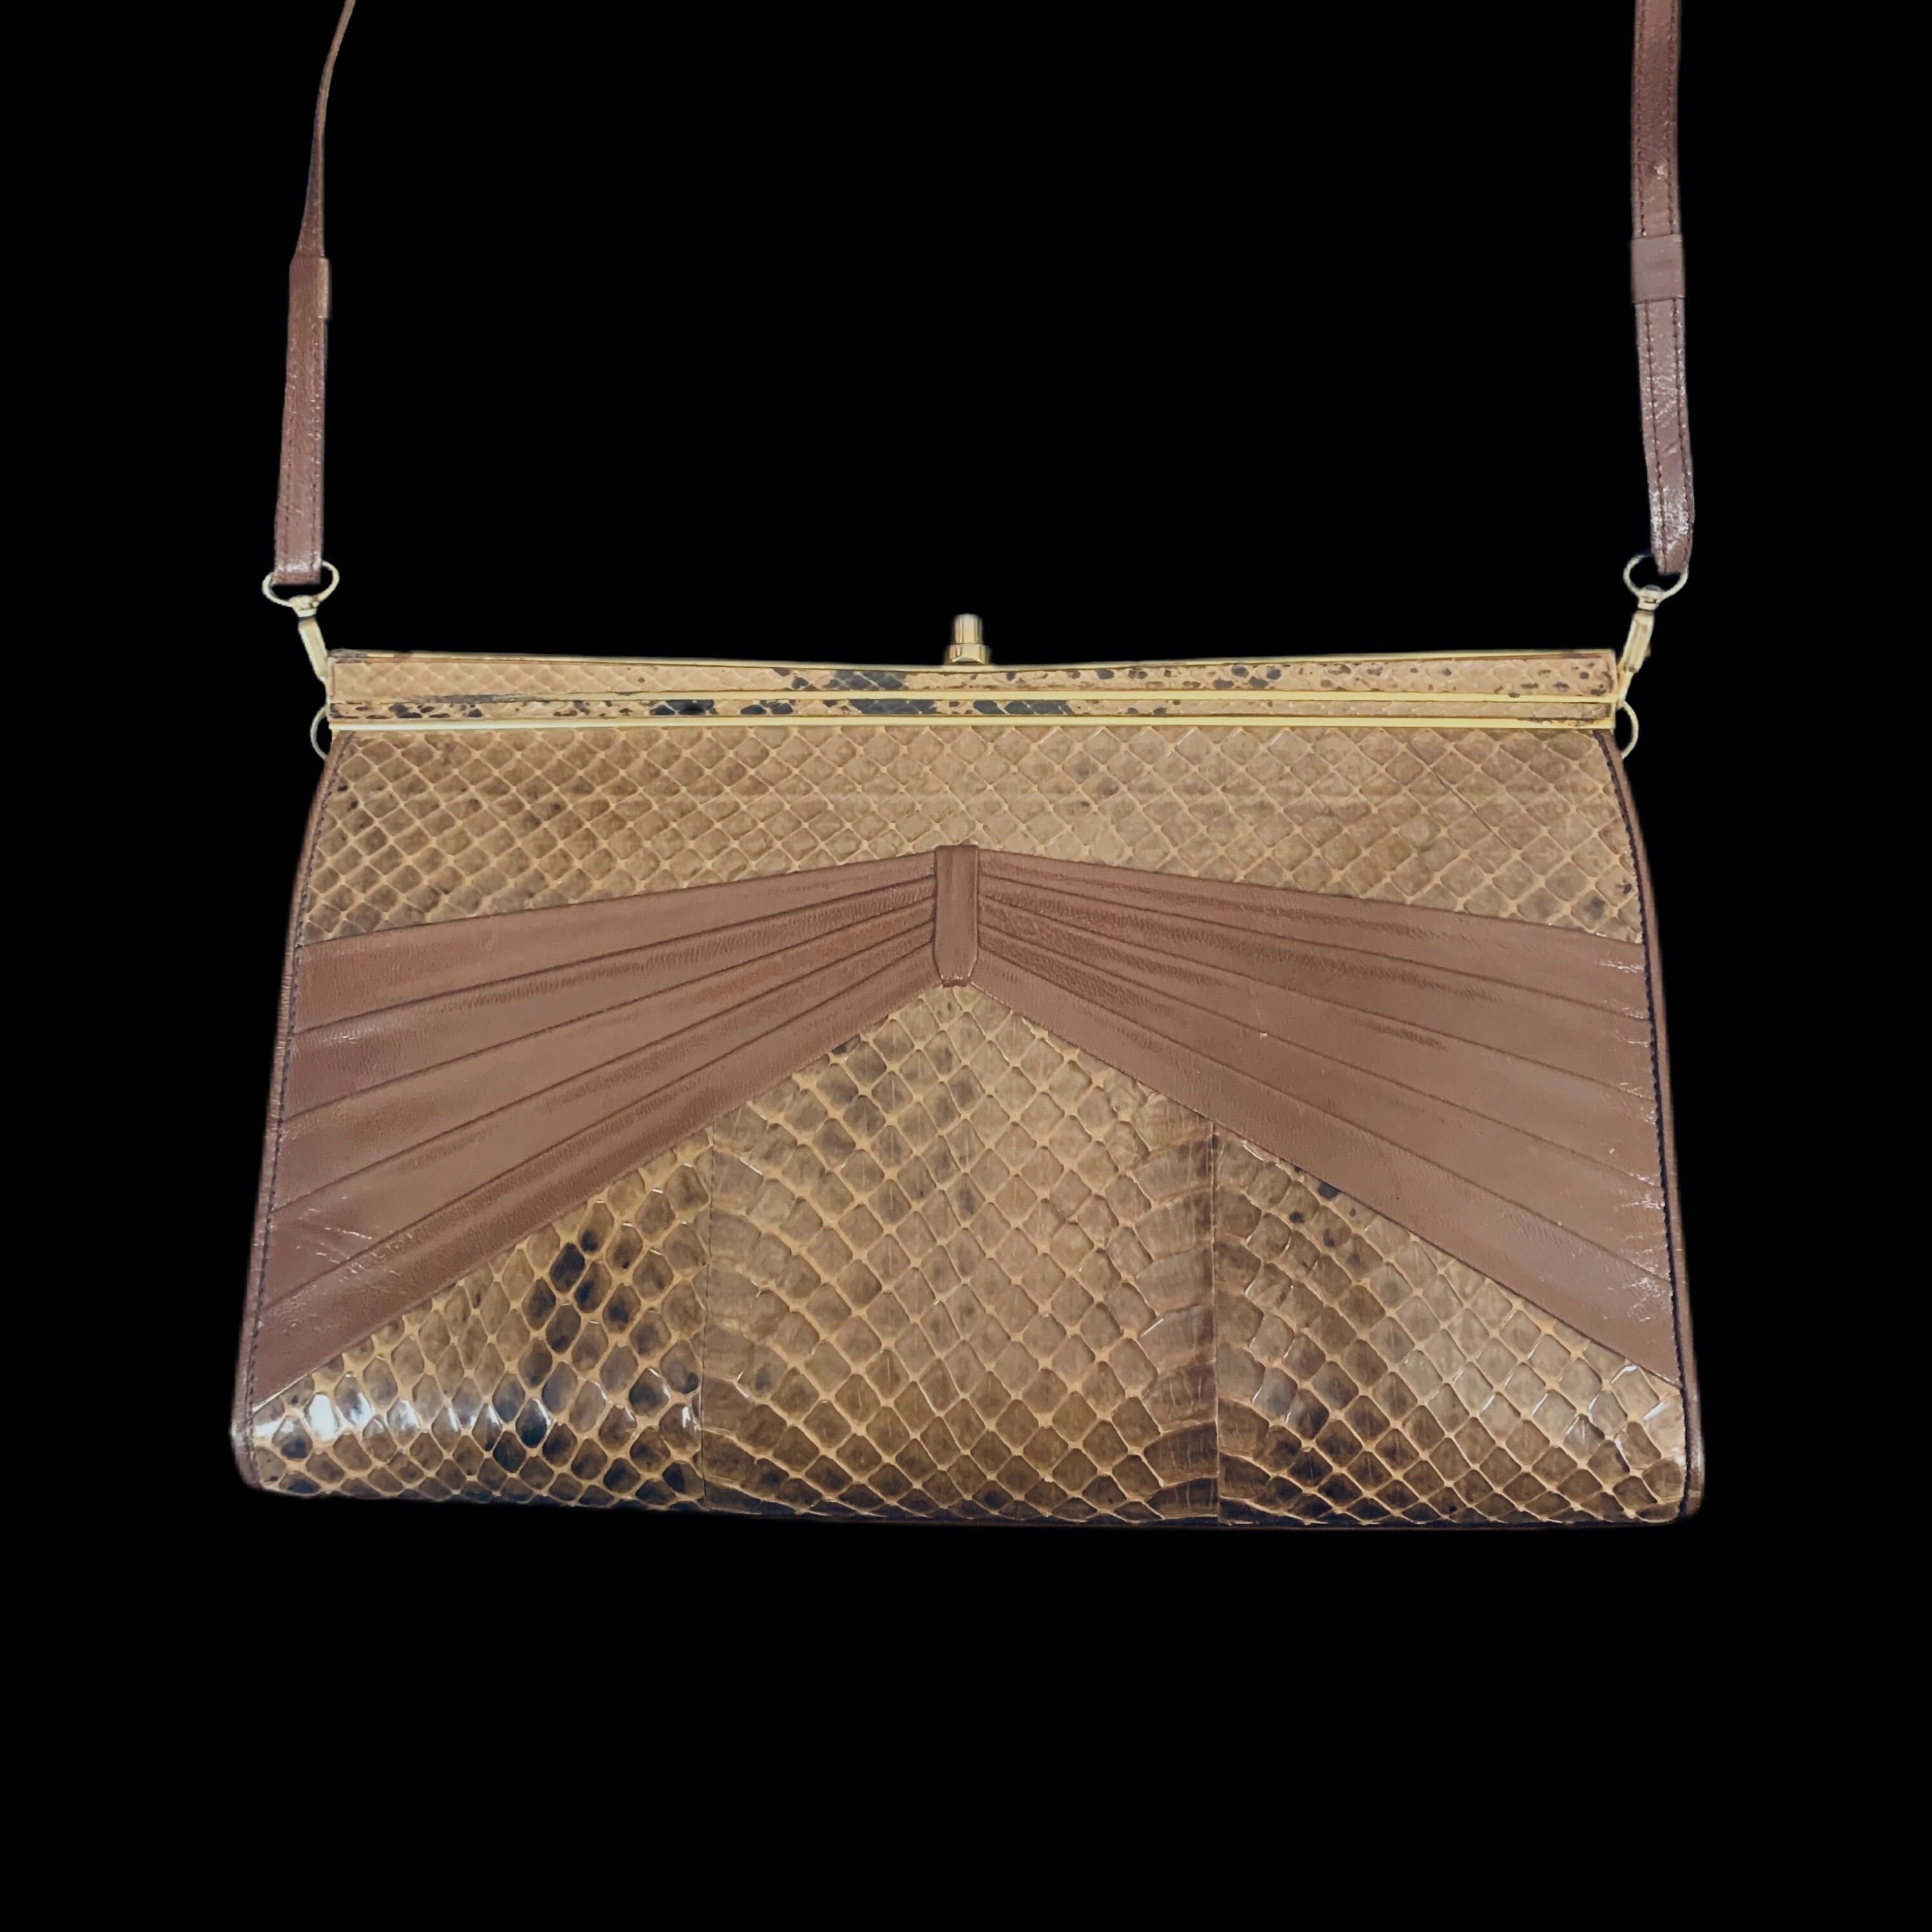 Charm #1 - Bull, Boho Glam for your Designer Handbag – Vintage Boho Bags